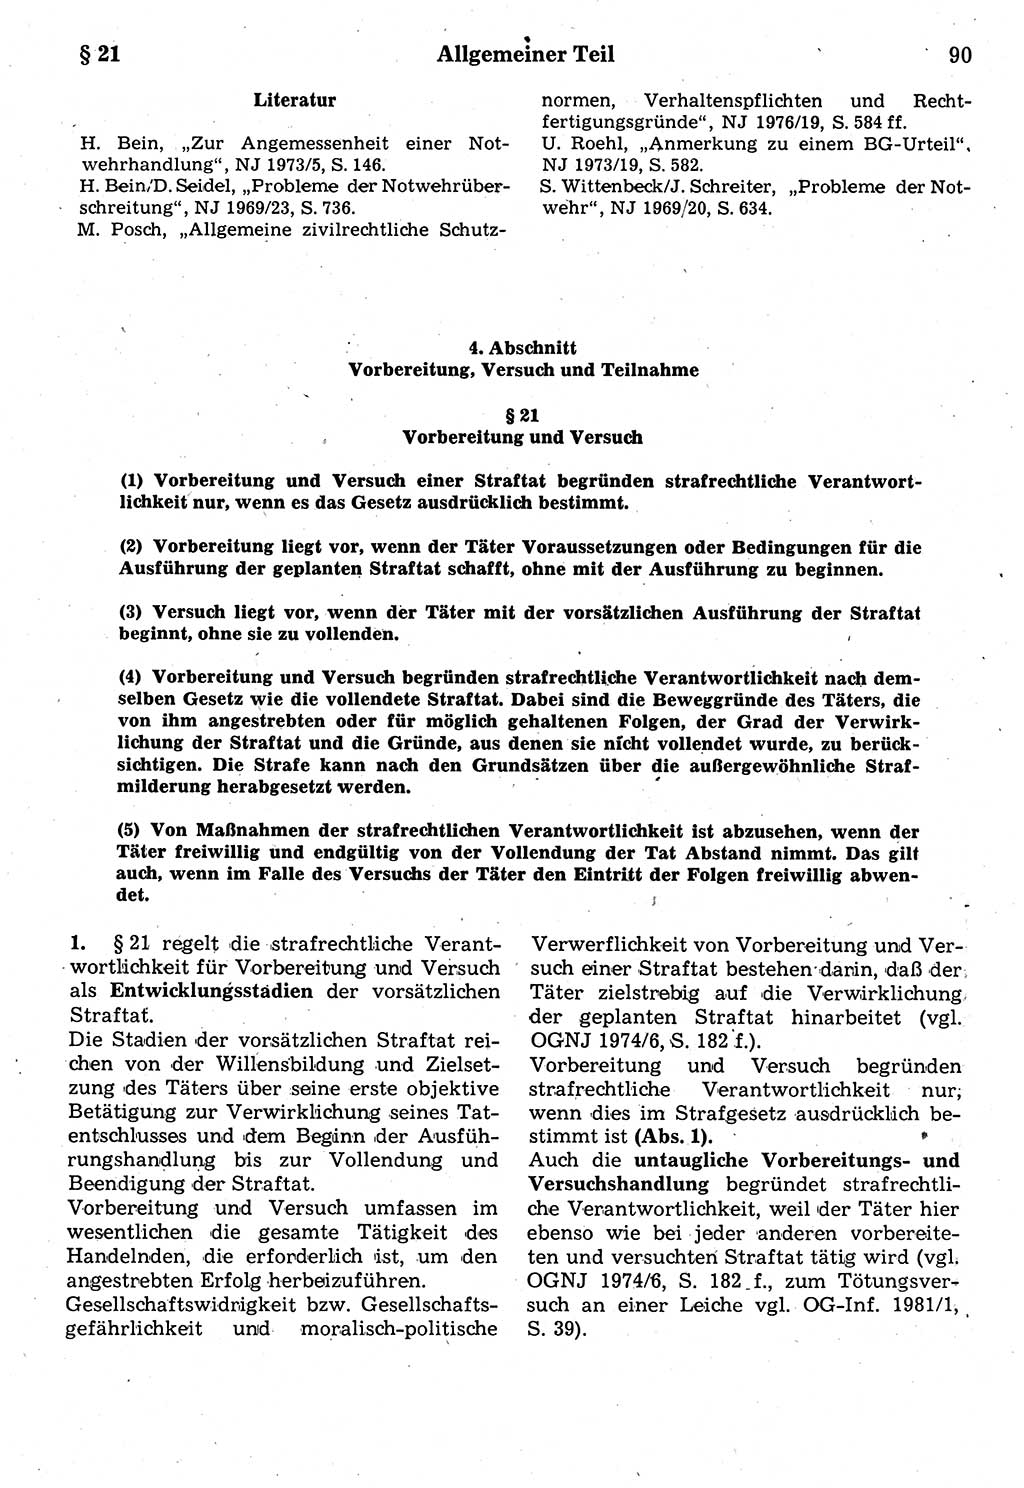 Strafrecht der Deutschen Demokratischen Republik (DDR), Kommentar zum Strafgesetzbuch (StGB) 1987, Seite 90 (Strafr. DDR Komm. StGB 1987, S. 90)